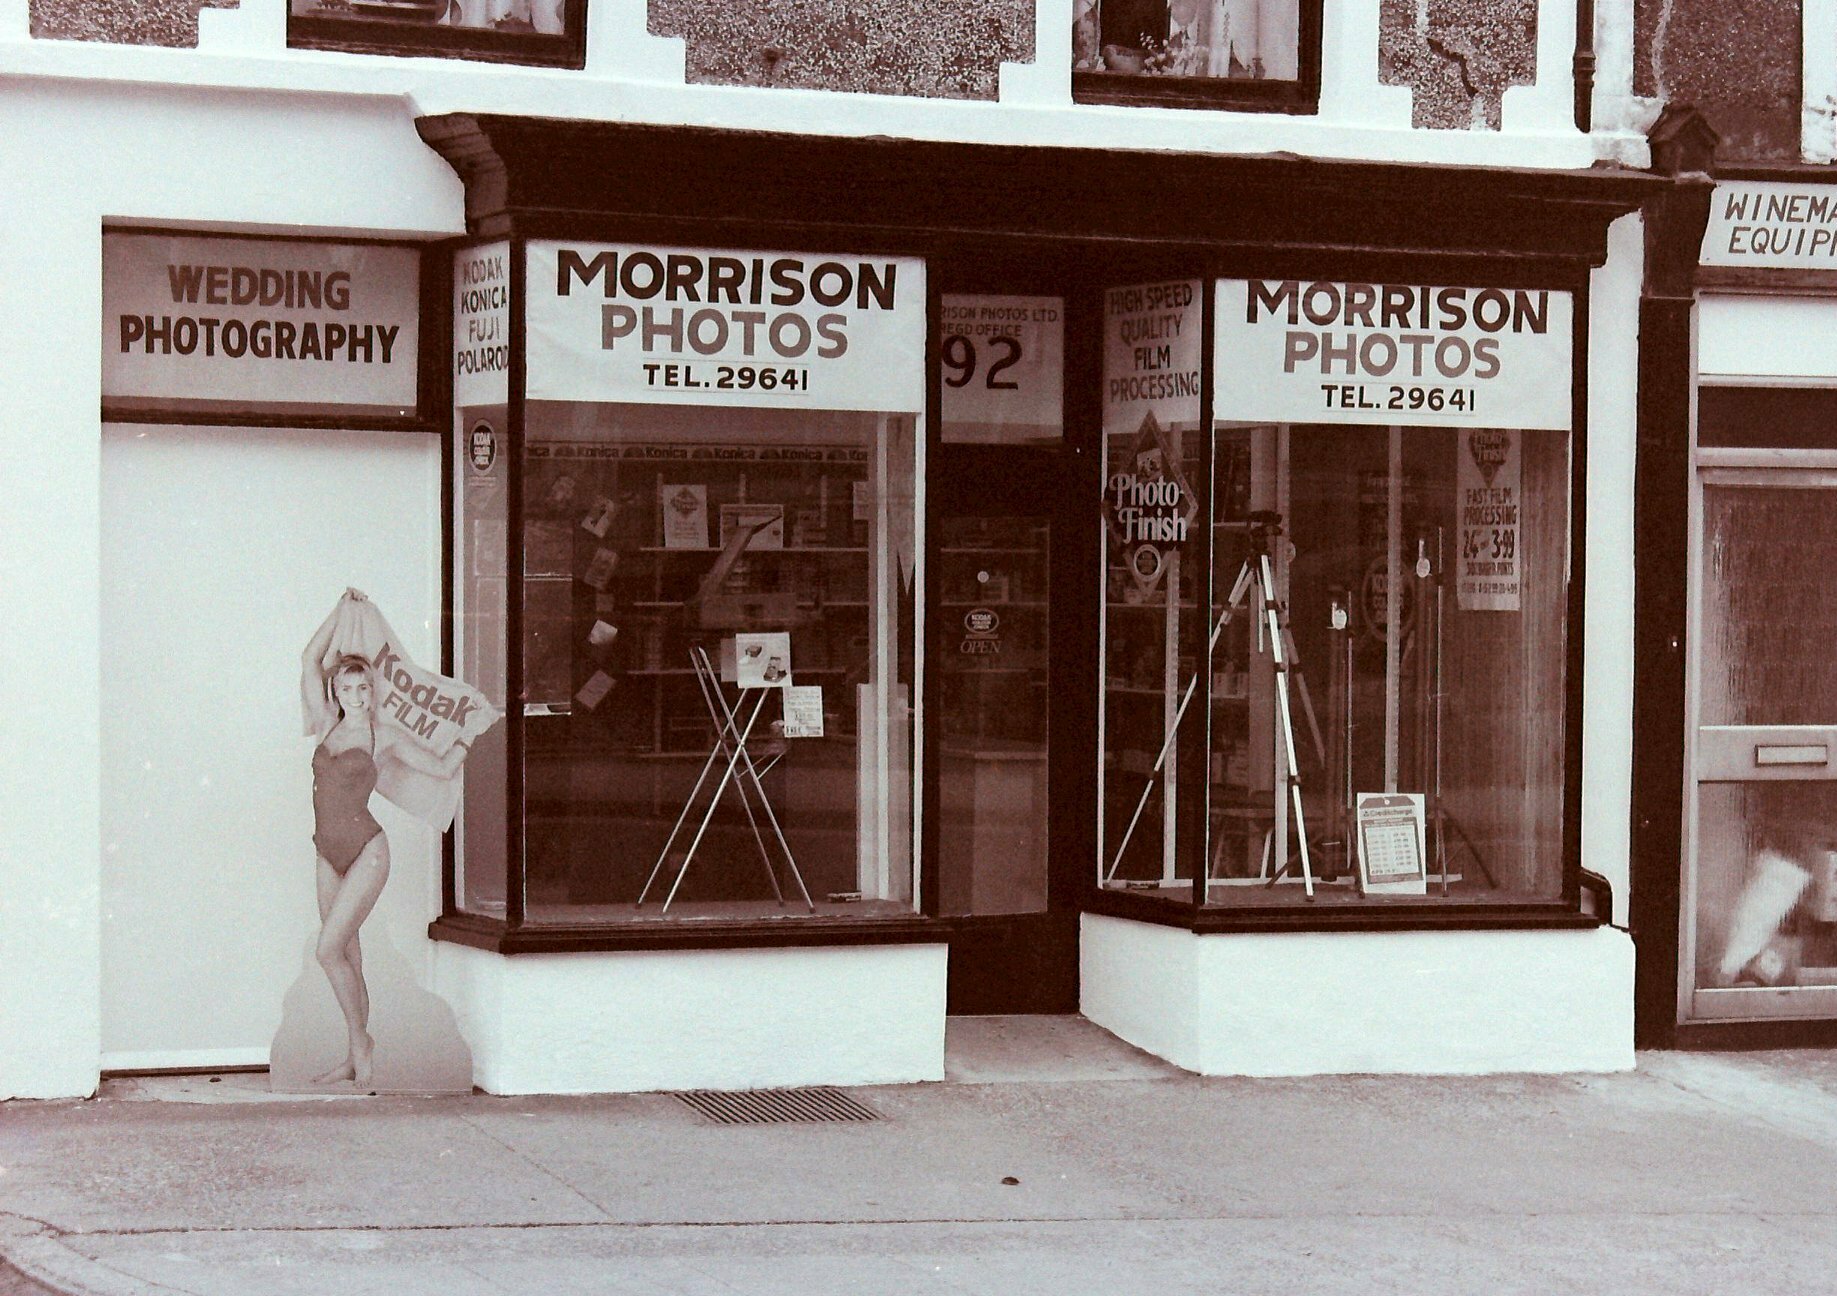 Morrison Photos Ltd